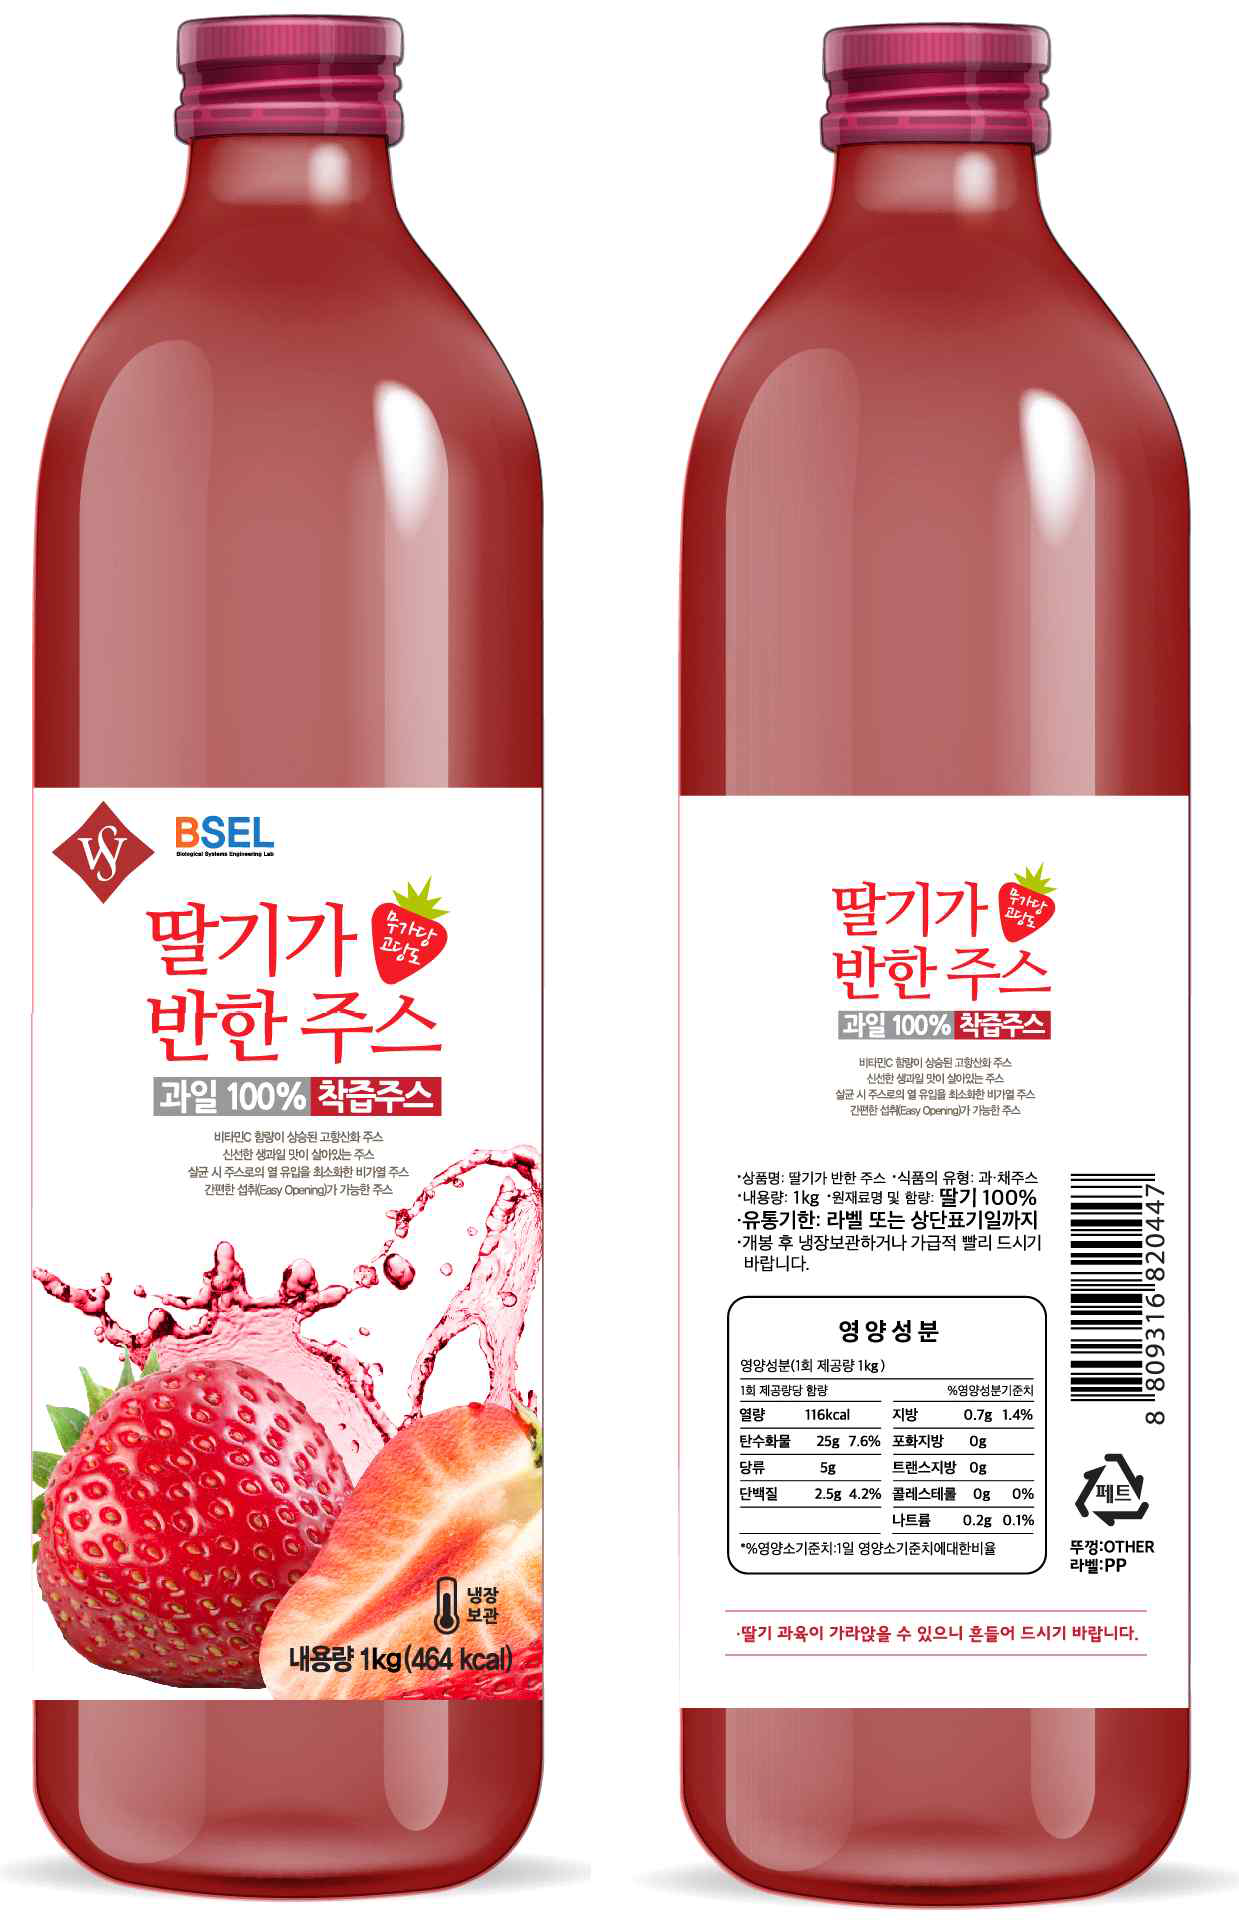 냉장 유통 딸기 주스 제품 포장 디자인(좌측부터 전면, 후면)